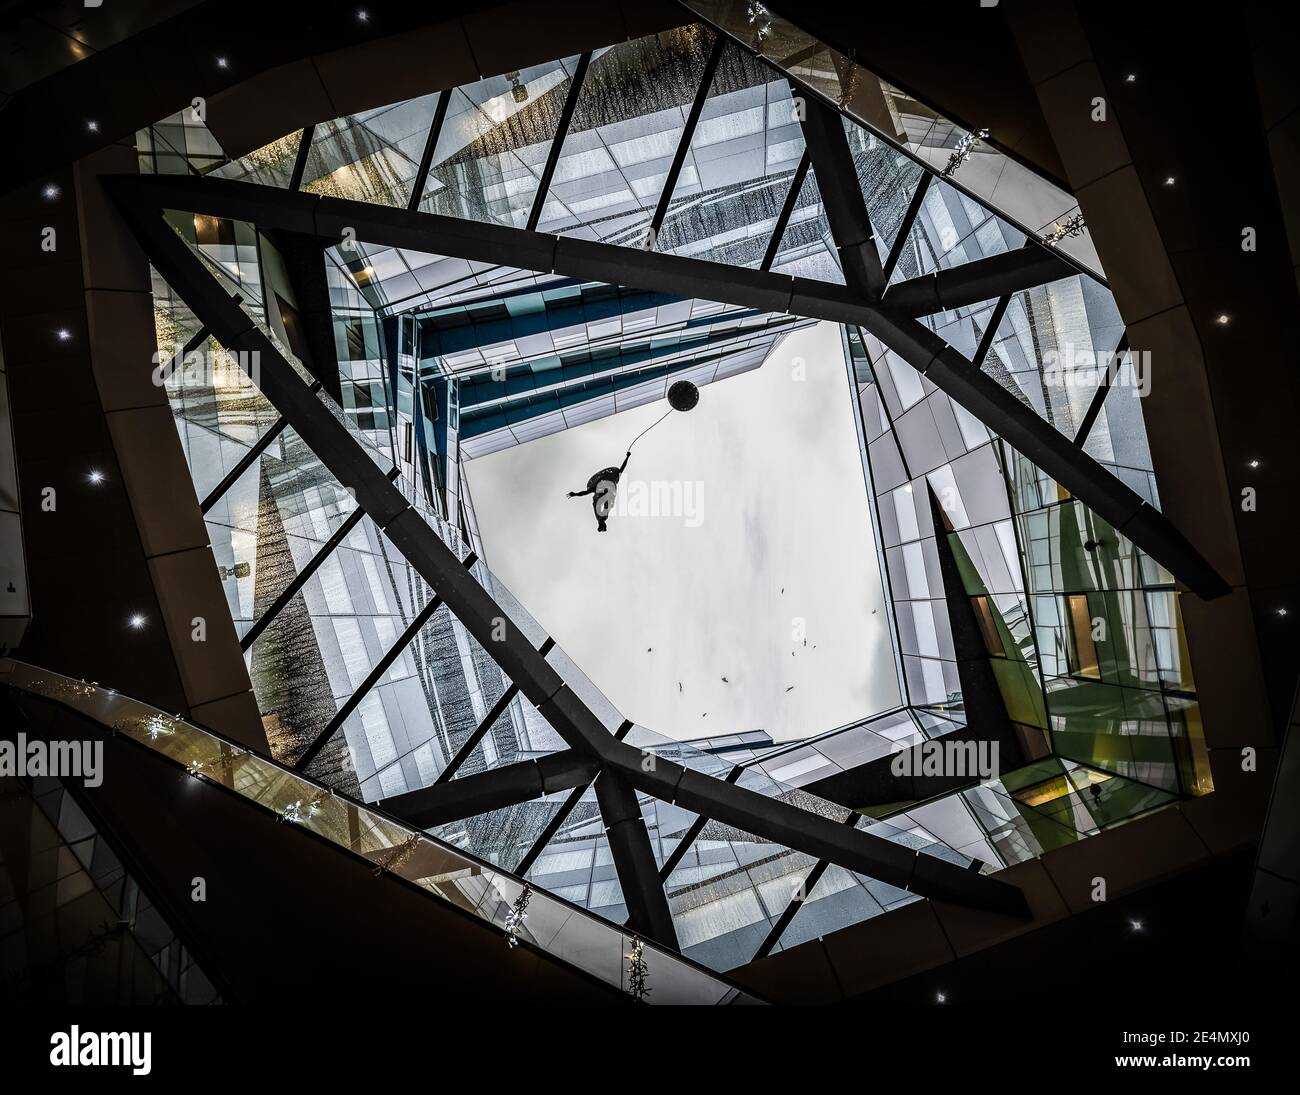 Das futuristische Cube-Gebäude in Birmingham hat mit Menschen ein offenes Dach Schweben mit einem Ballon in den Himmel und Vögel Fliegen über Glasfenster modern Stockfoto